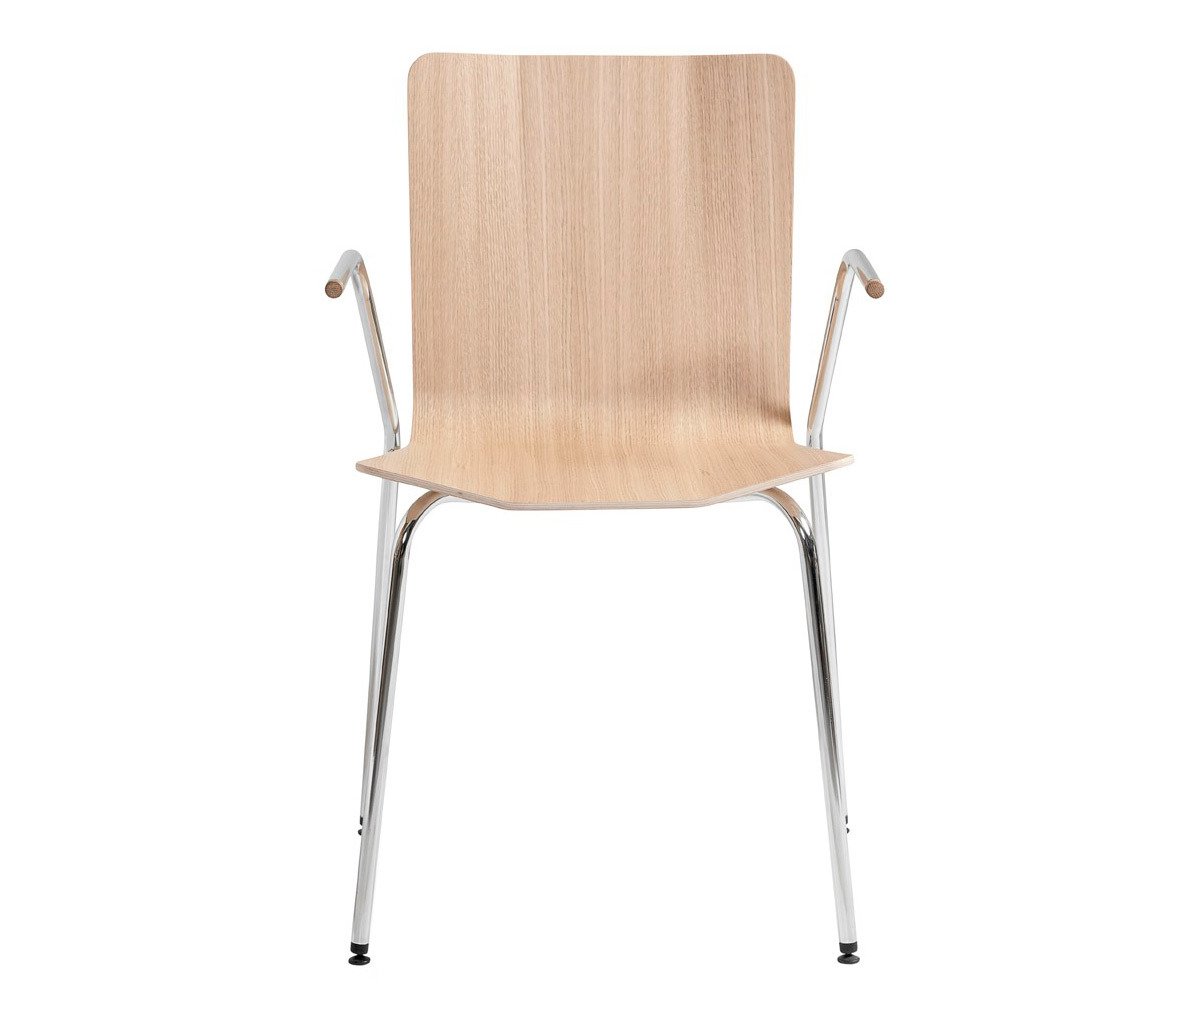 Chair #802